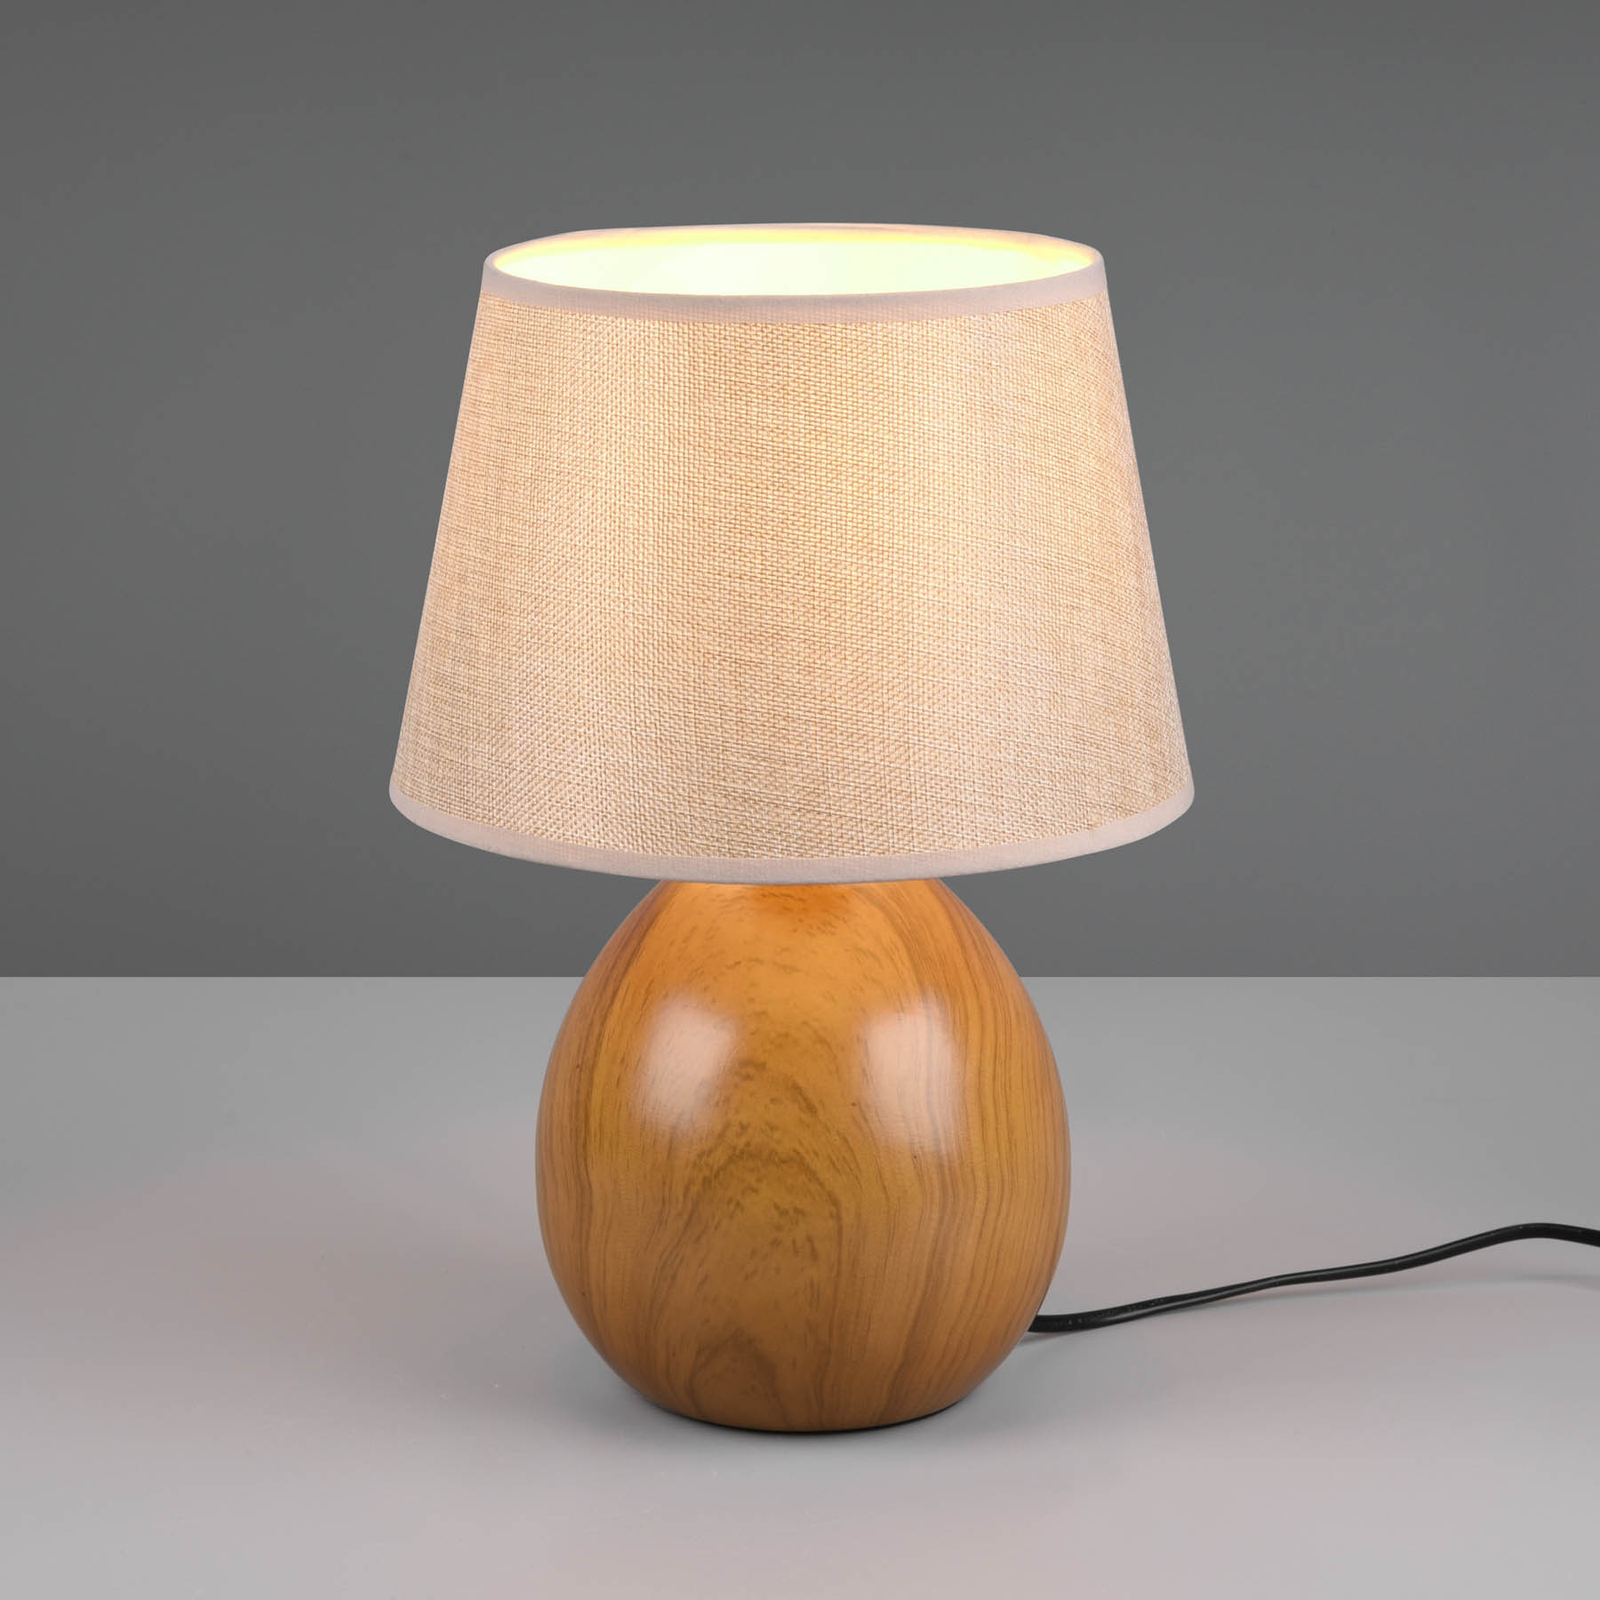 Loxur table lamp, height 35 cm, beige/wood look